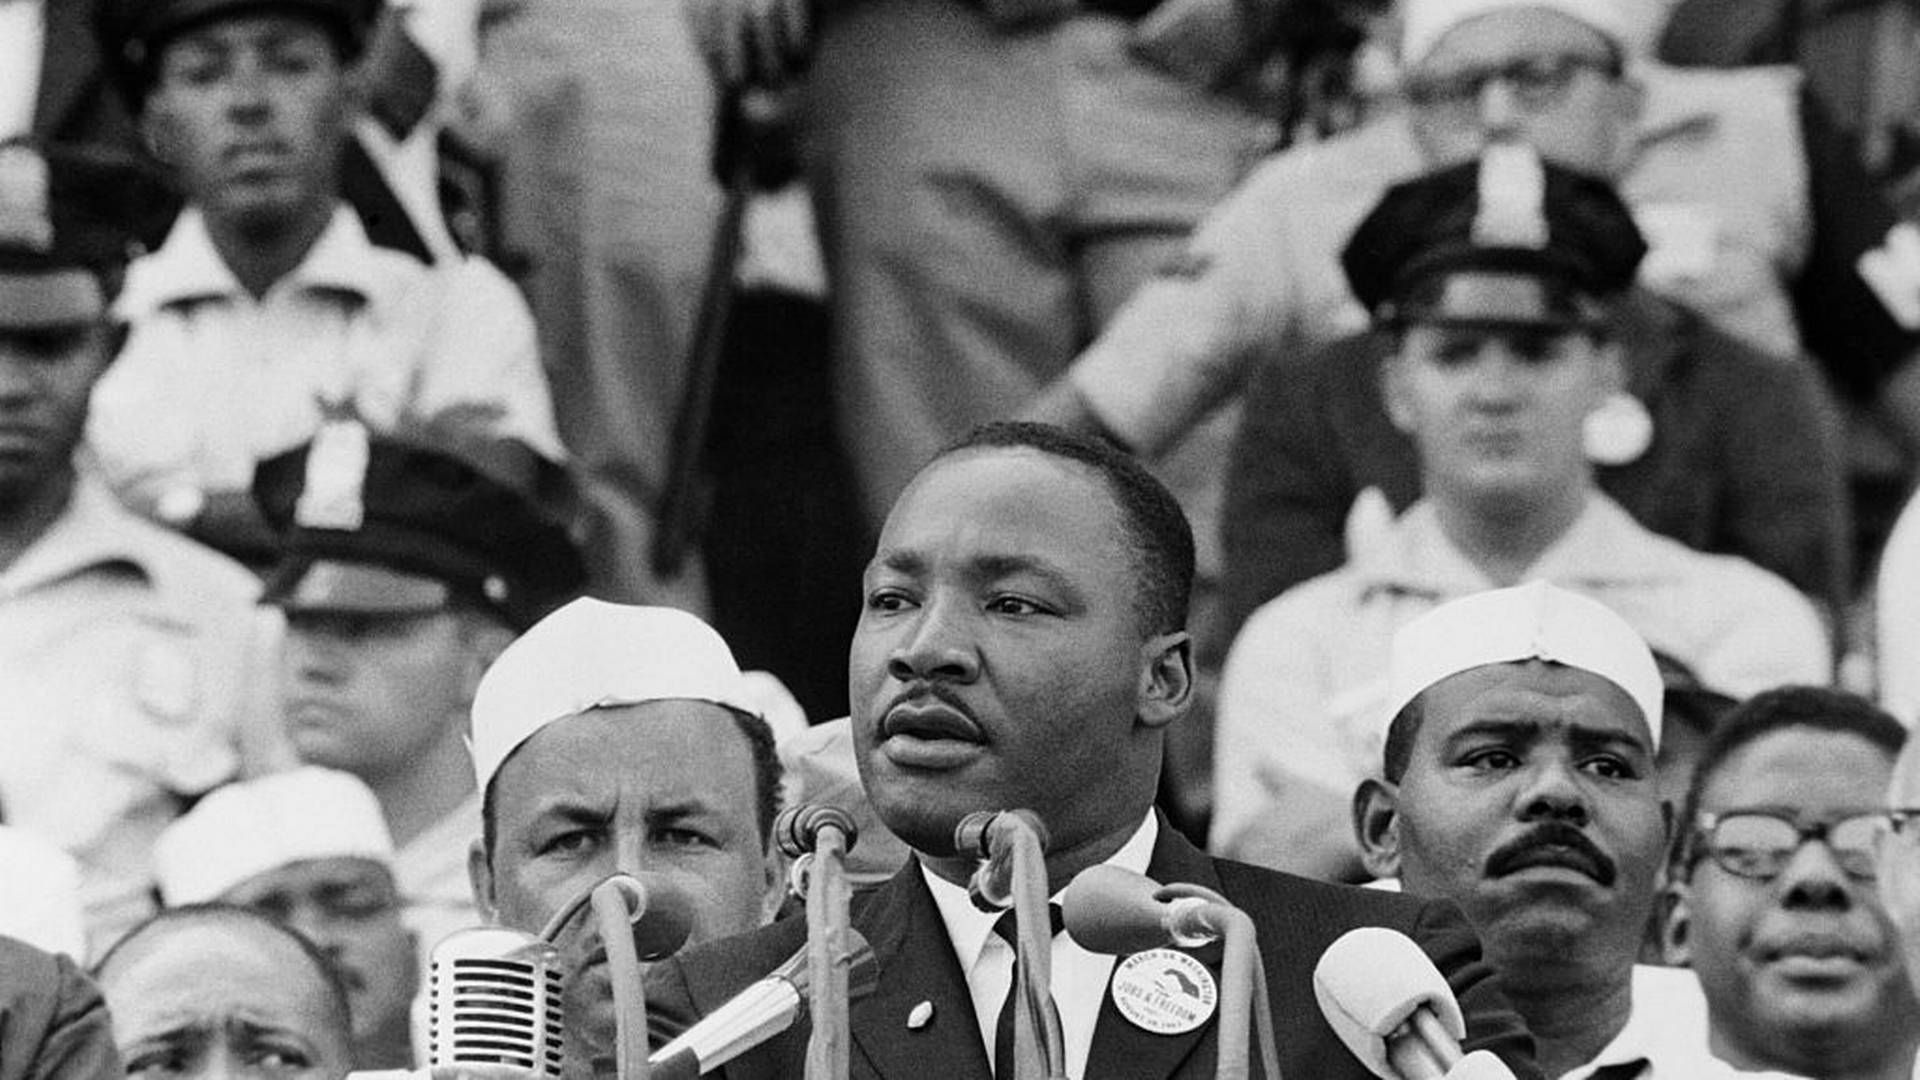 Få taler kan ændre et lands skæbne. Ingen taler har som “I have dream” ændret, hvordan vi ser på talen som retorik og politik. I dag fylder den berømte tale 60 år. Kilde: Getty Images.